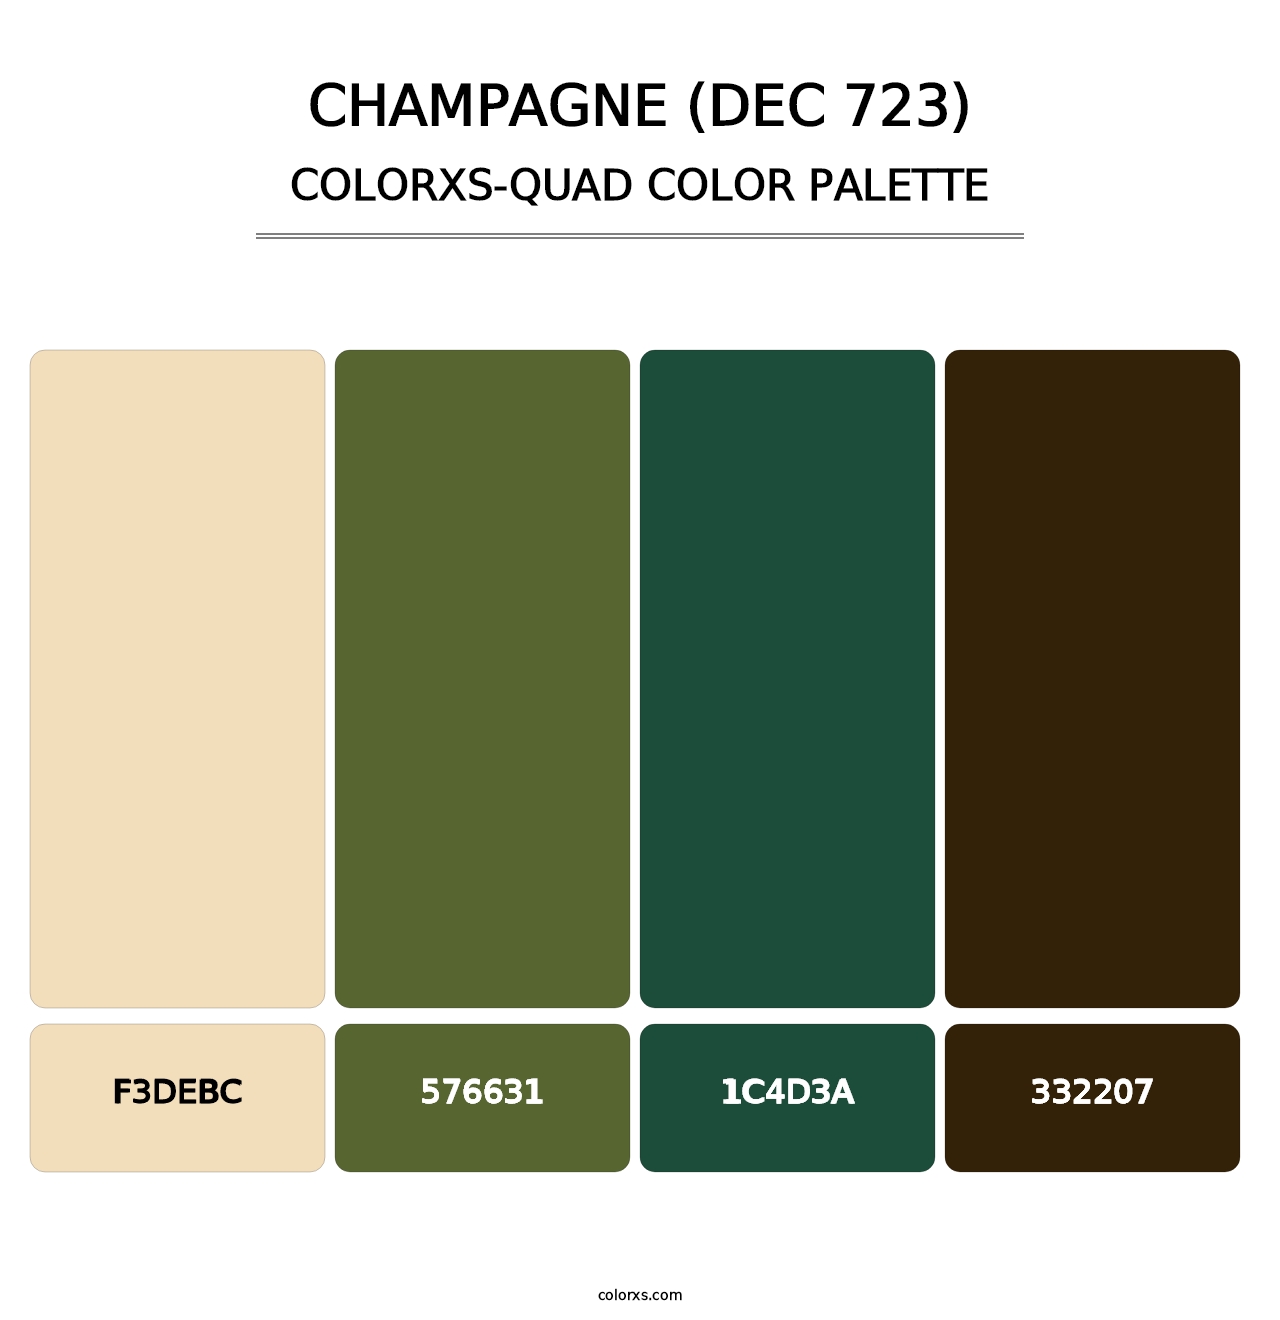 Champagne (DEC 723) - Colorxs Quad Palette